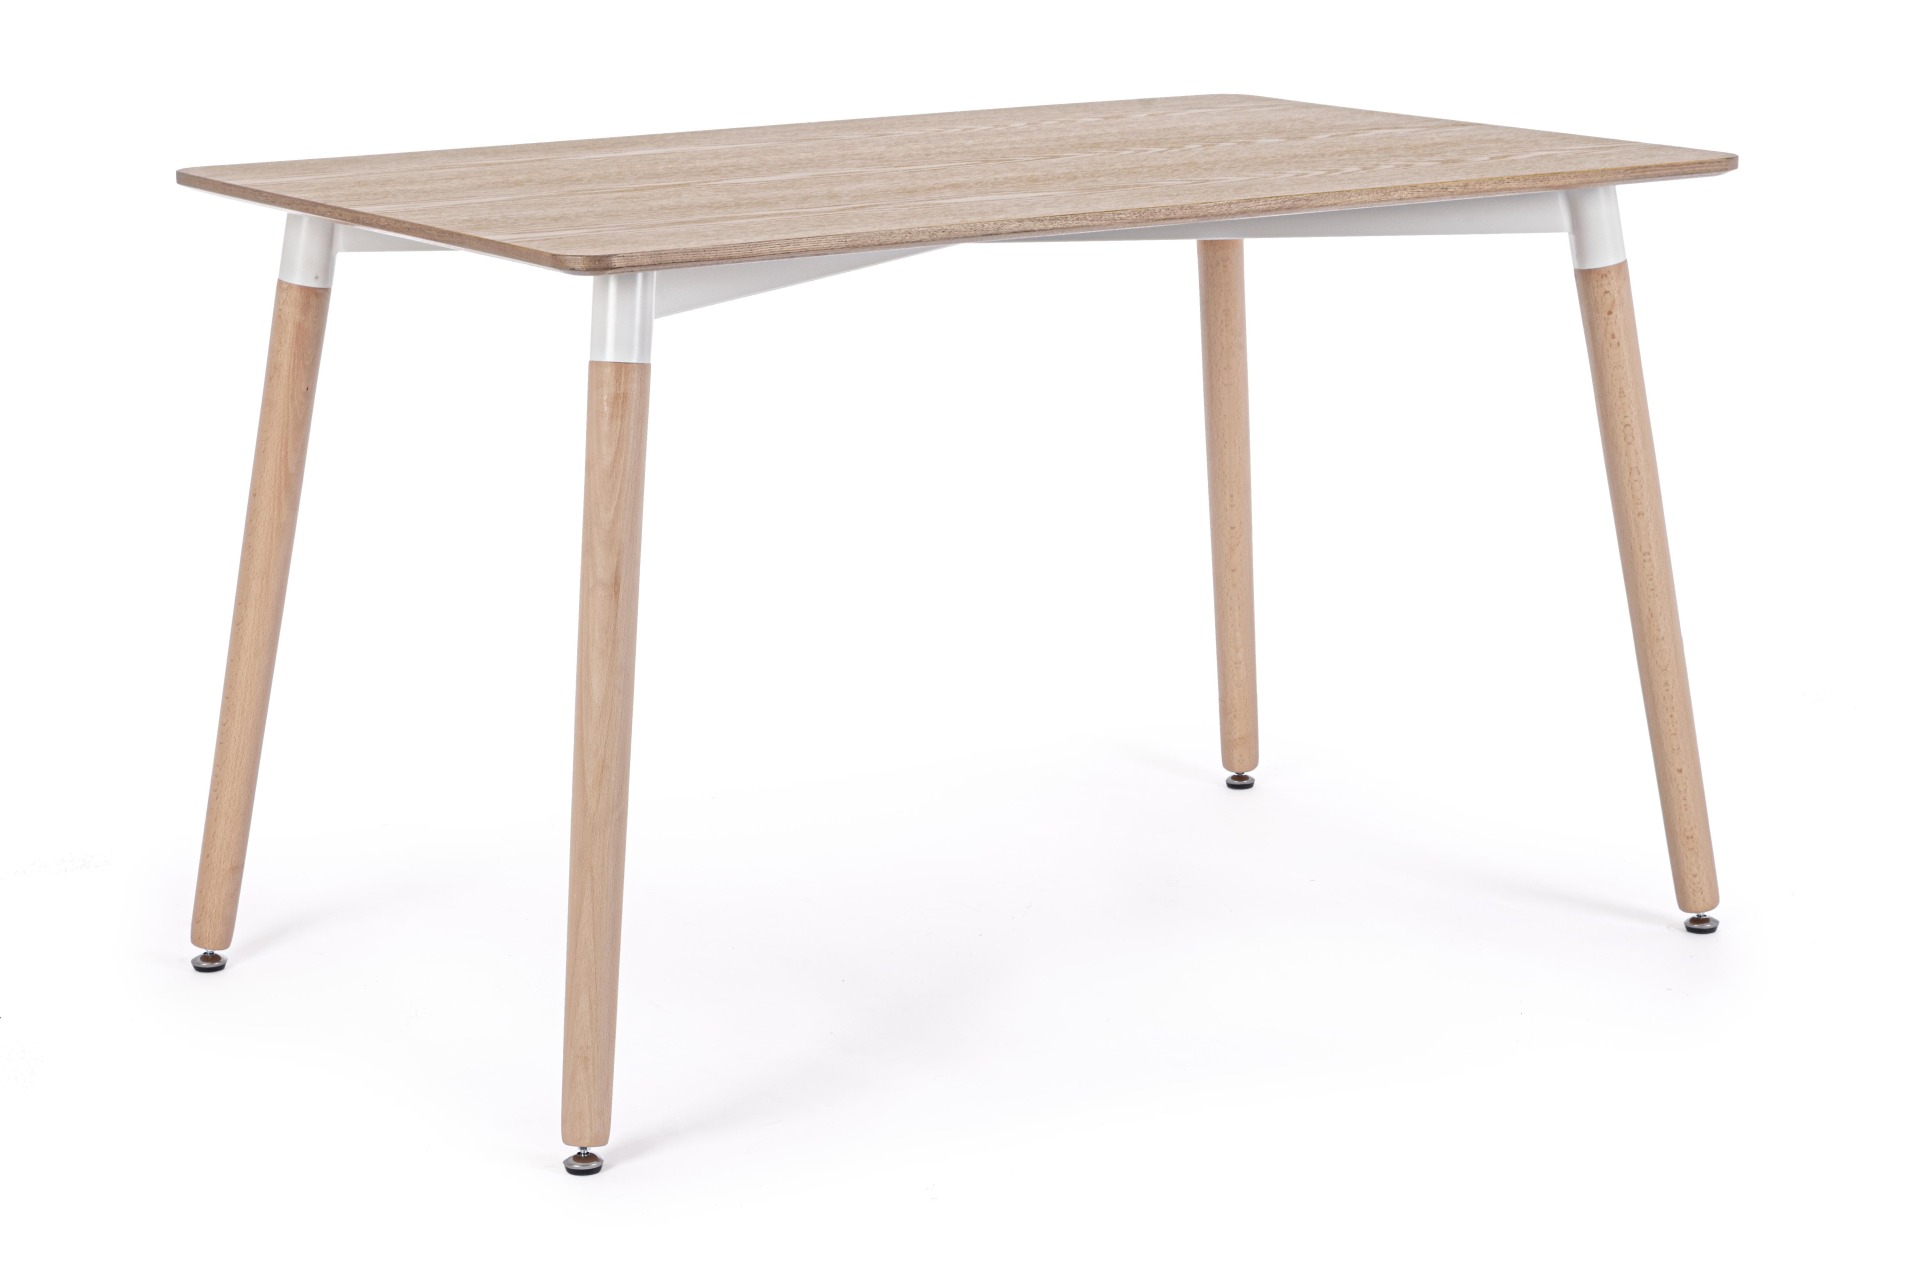 Der Esstisch David überzeugt mit seinem klassischem Design. Gefertigt wurde er aus MDF, welches eine Holz-Optik besitzt. Das Gestell des Tisches ist aus Buchenholz und besitzt eine natürliche Farbe. Der Tisch hat eine Breite von 120 cm.